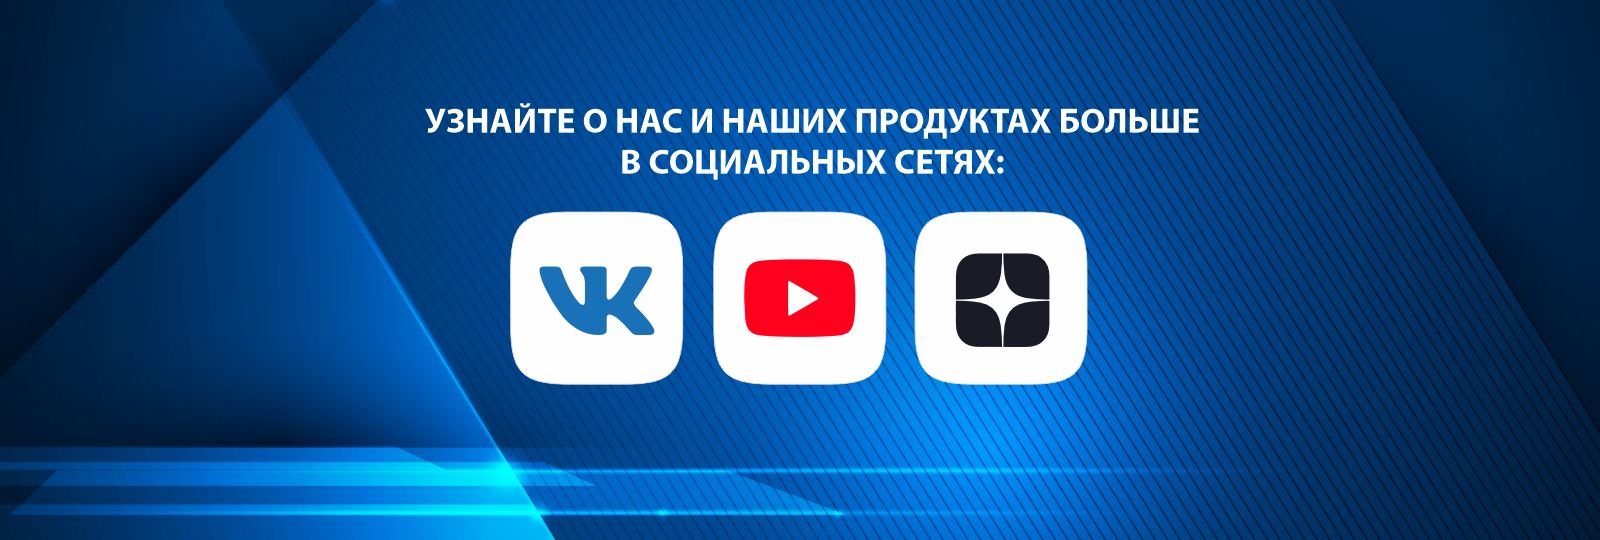 Компания Сантехгаз расширяет свое присутствие в сети: Запуск YouTube-канала и присутствие в Яндекс.Дзен